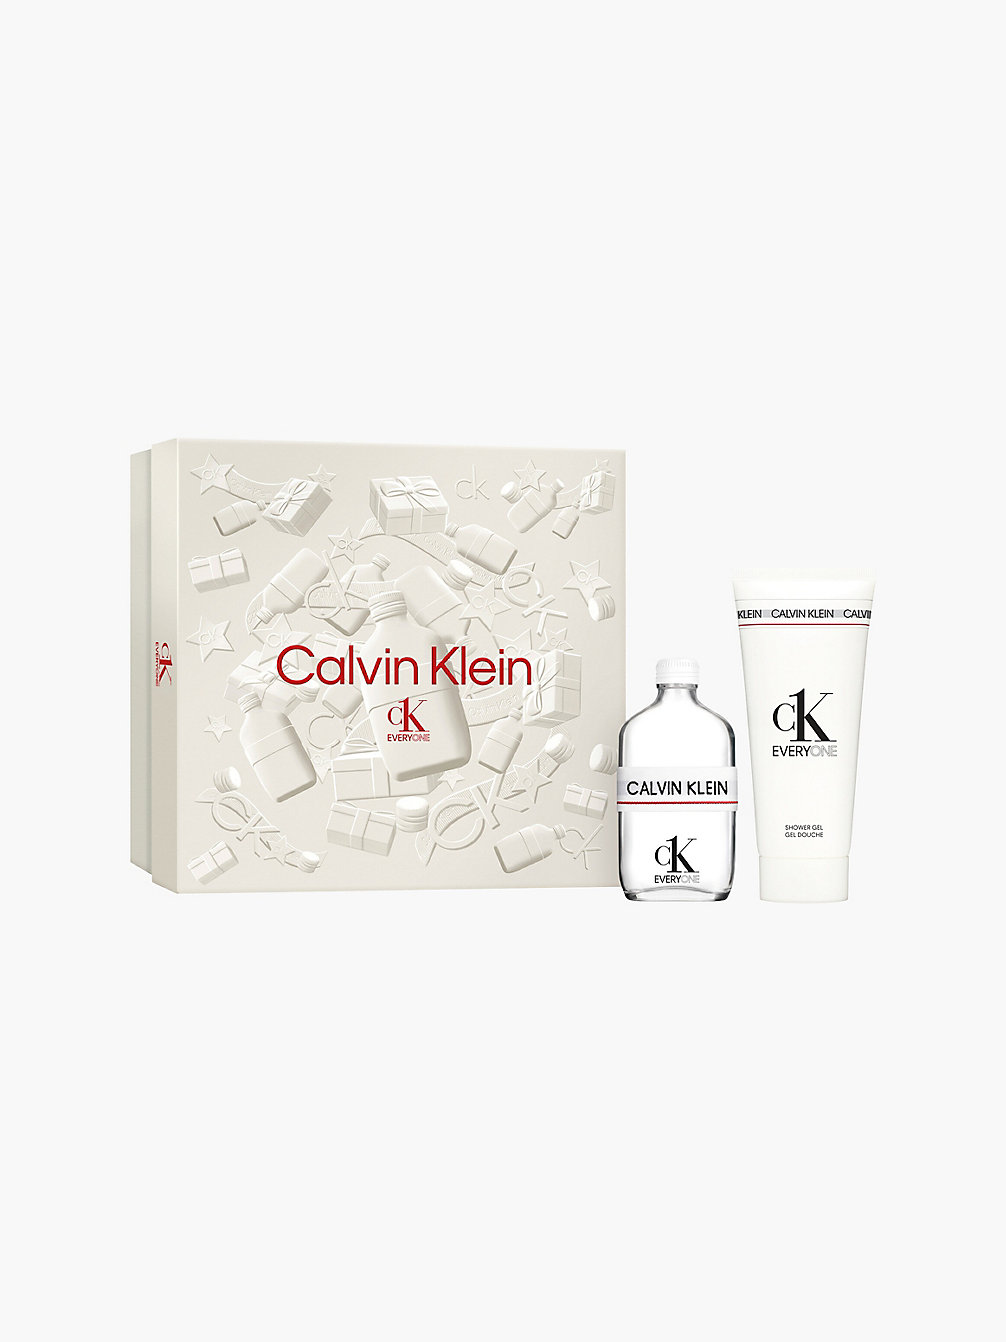 MULTI CK Everyone - Coffret Cadeau Eau De Toilette undefined unisex Calvin Klein